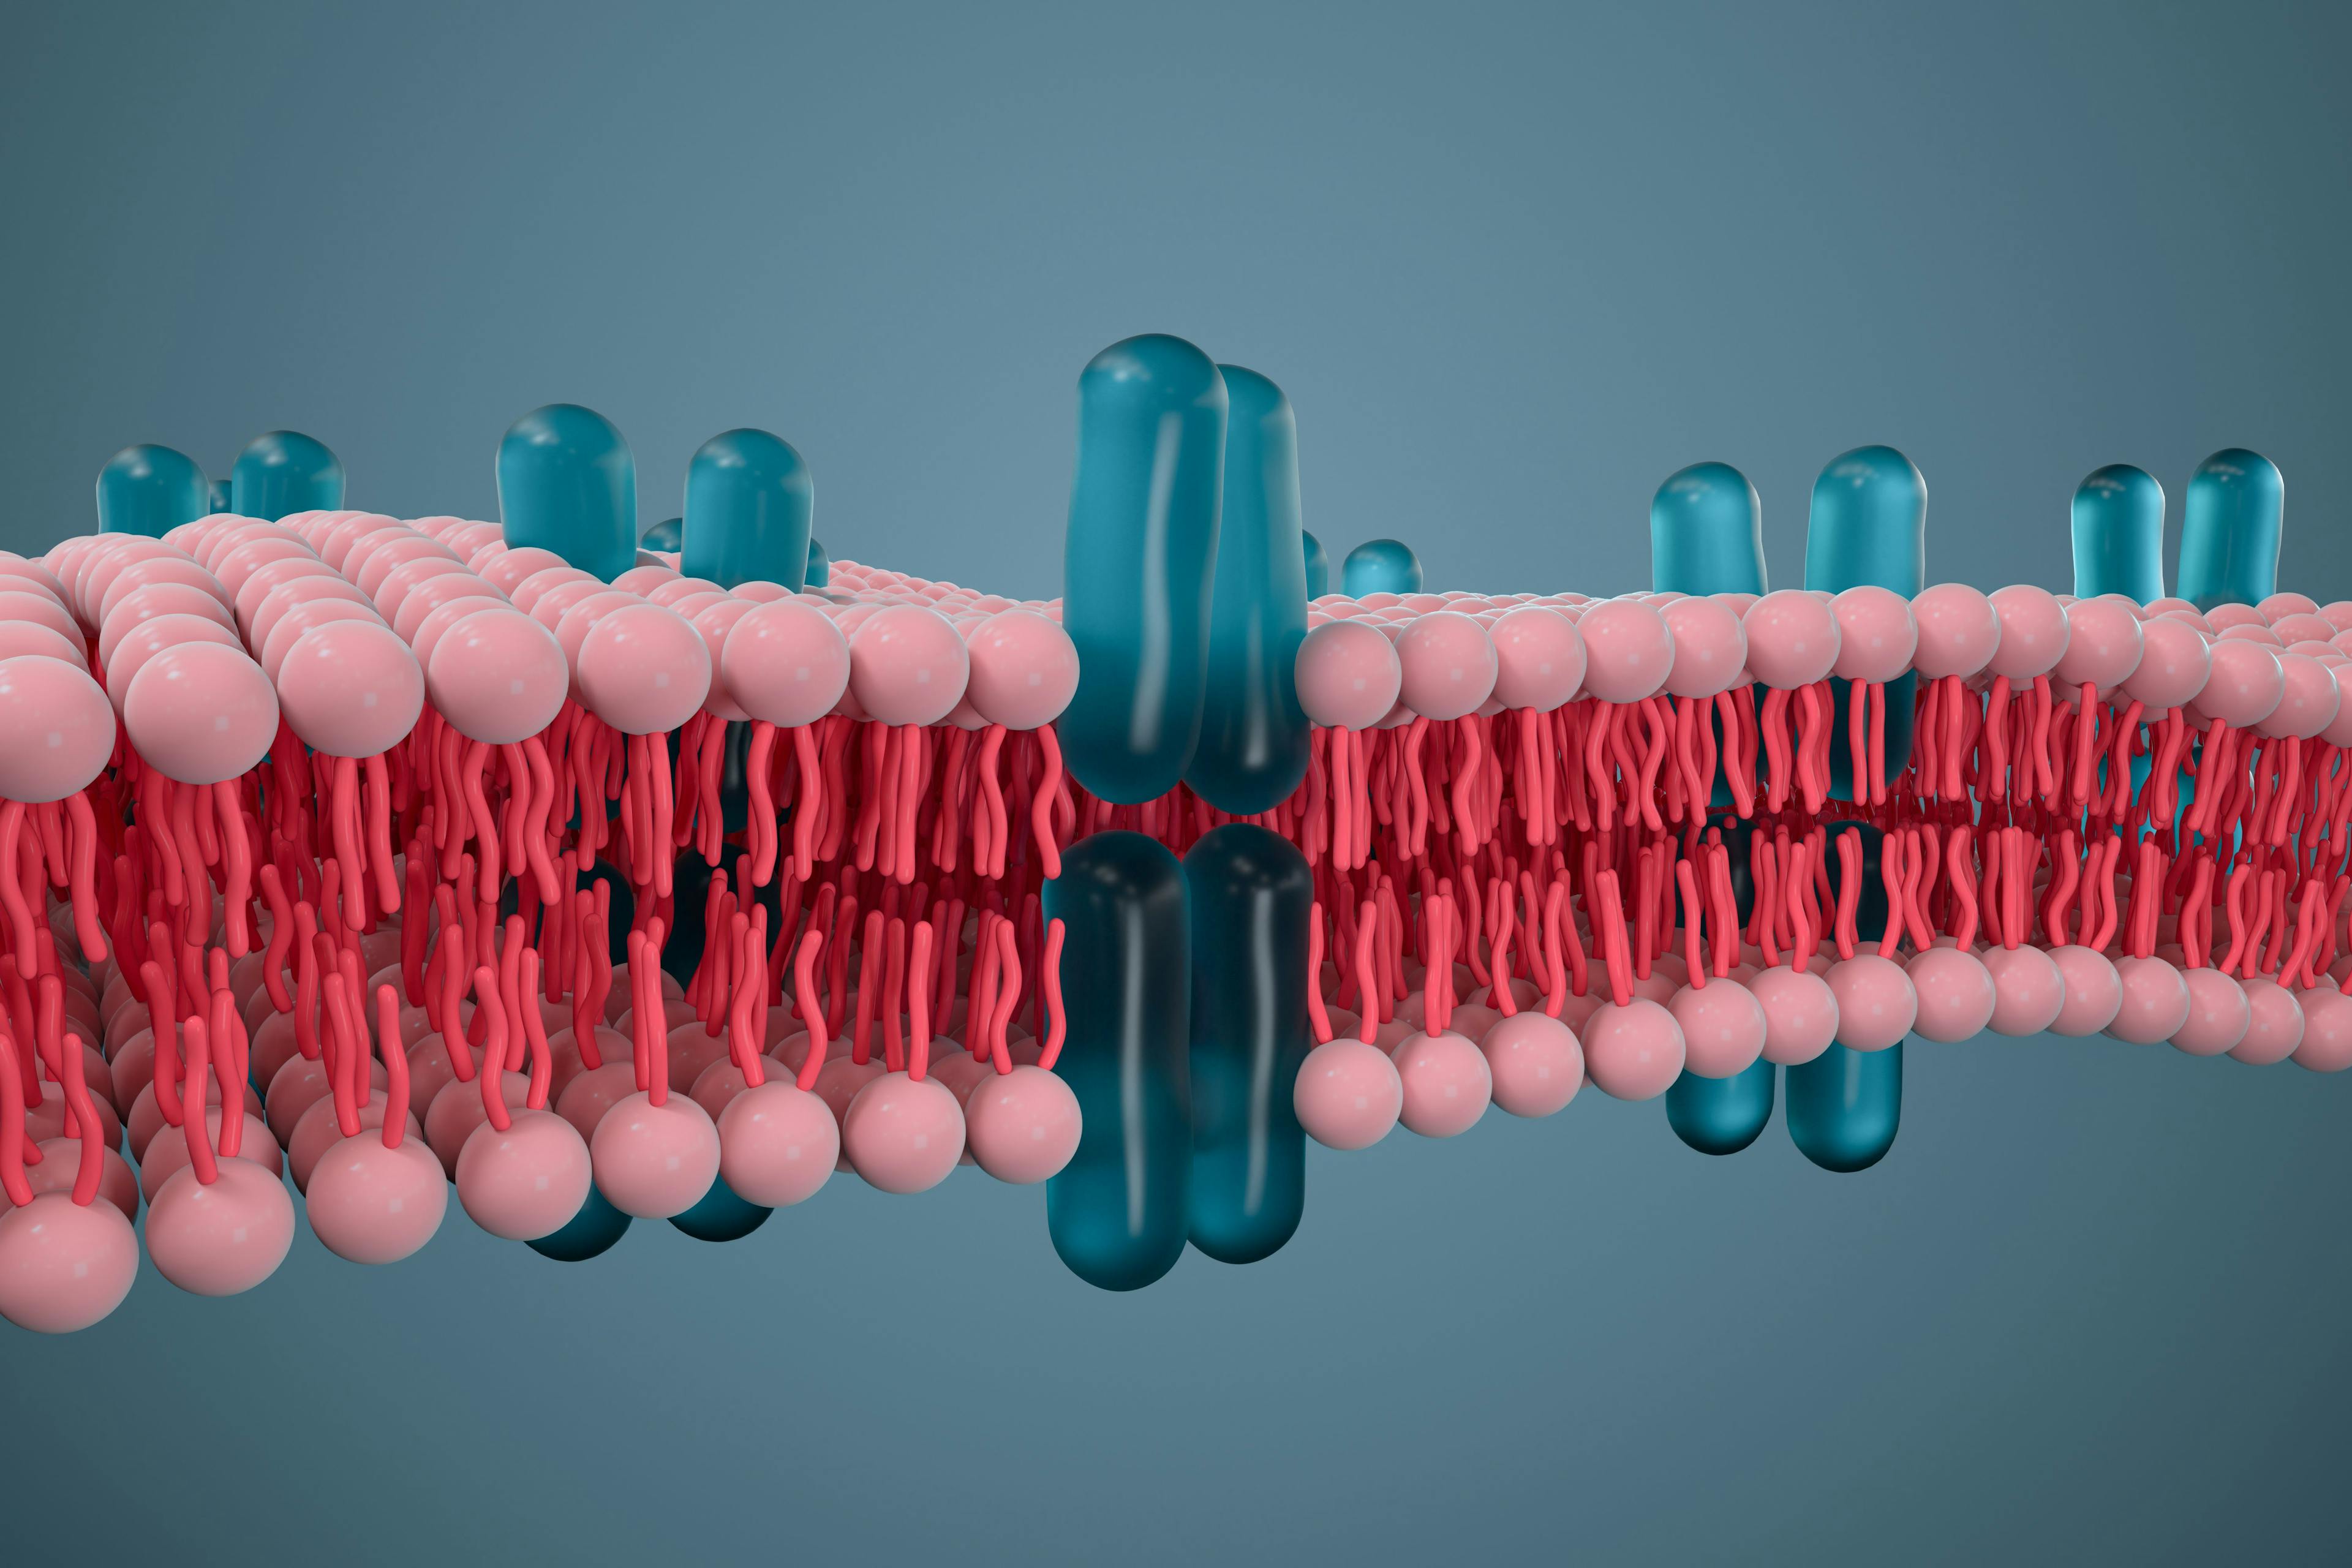 Cell membrane and biology, biological concept, 3d rendering. | Image Credit: © Vink Fan - stock.adobe.com